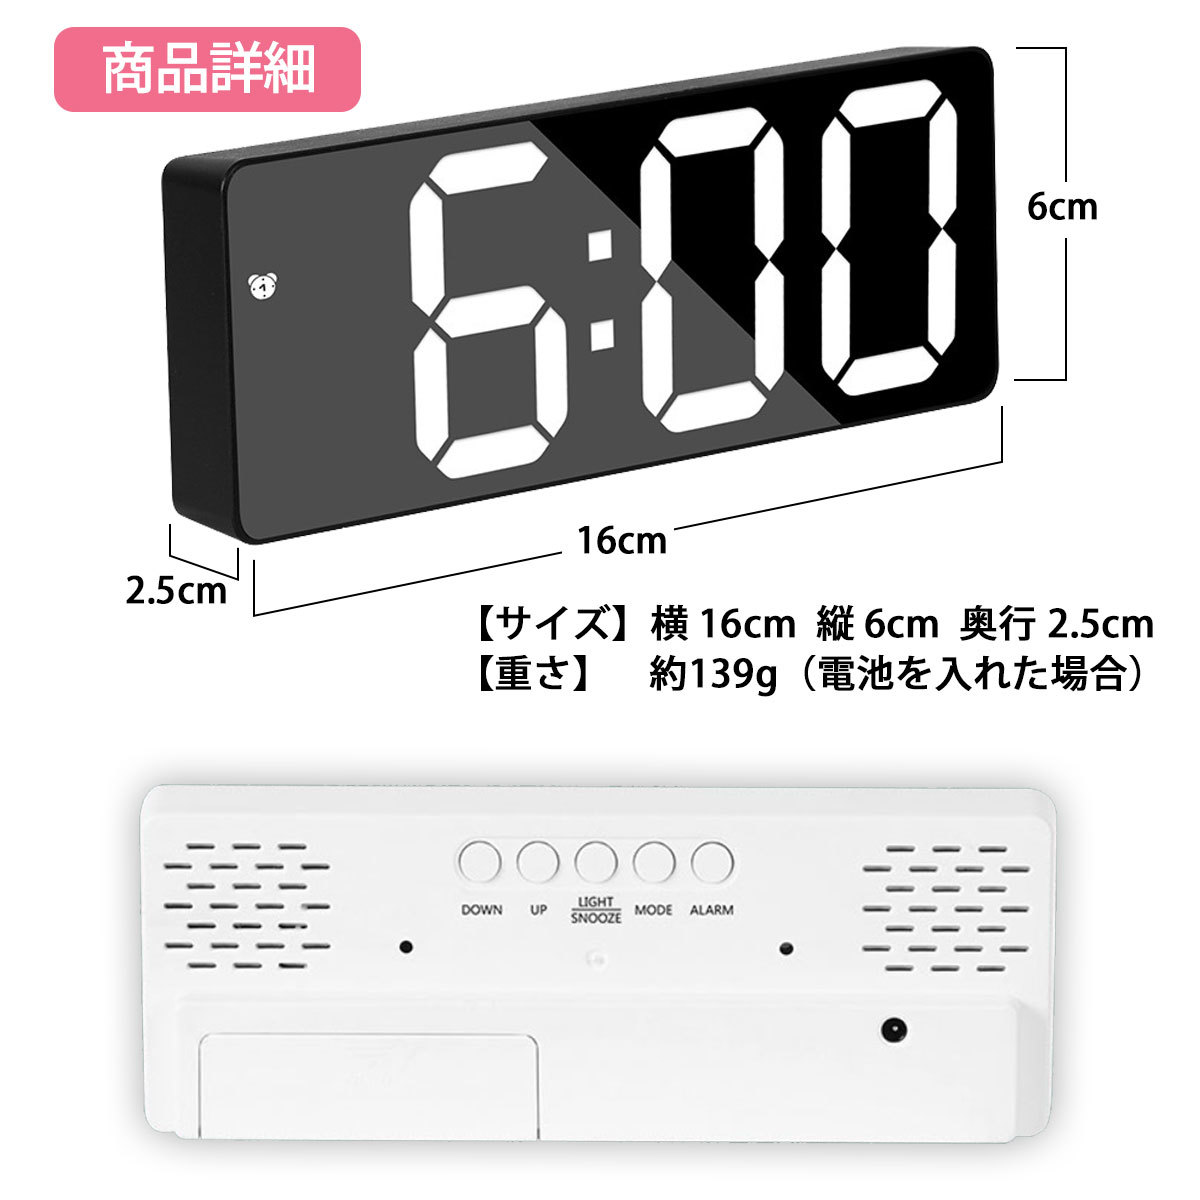 【目覚まし時計 ブラック(ミラータイプ)】おしゃれ めざまし時計 LED デジタル 置き時計 シンプル アラーム 温度計 多機能 見やすい_画像7